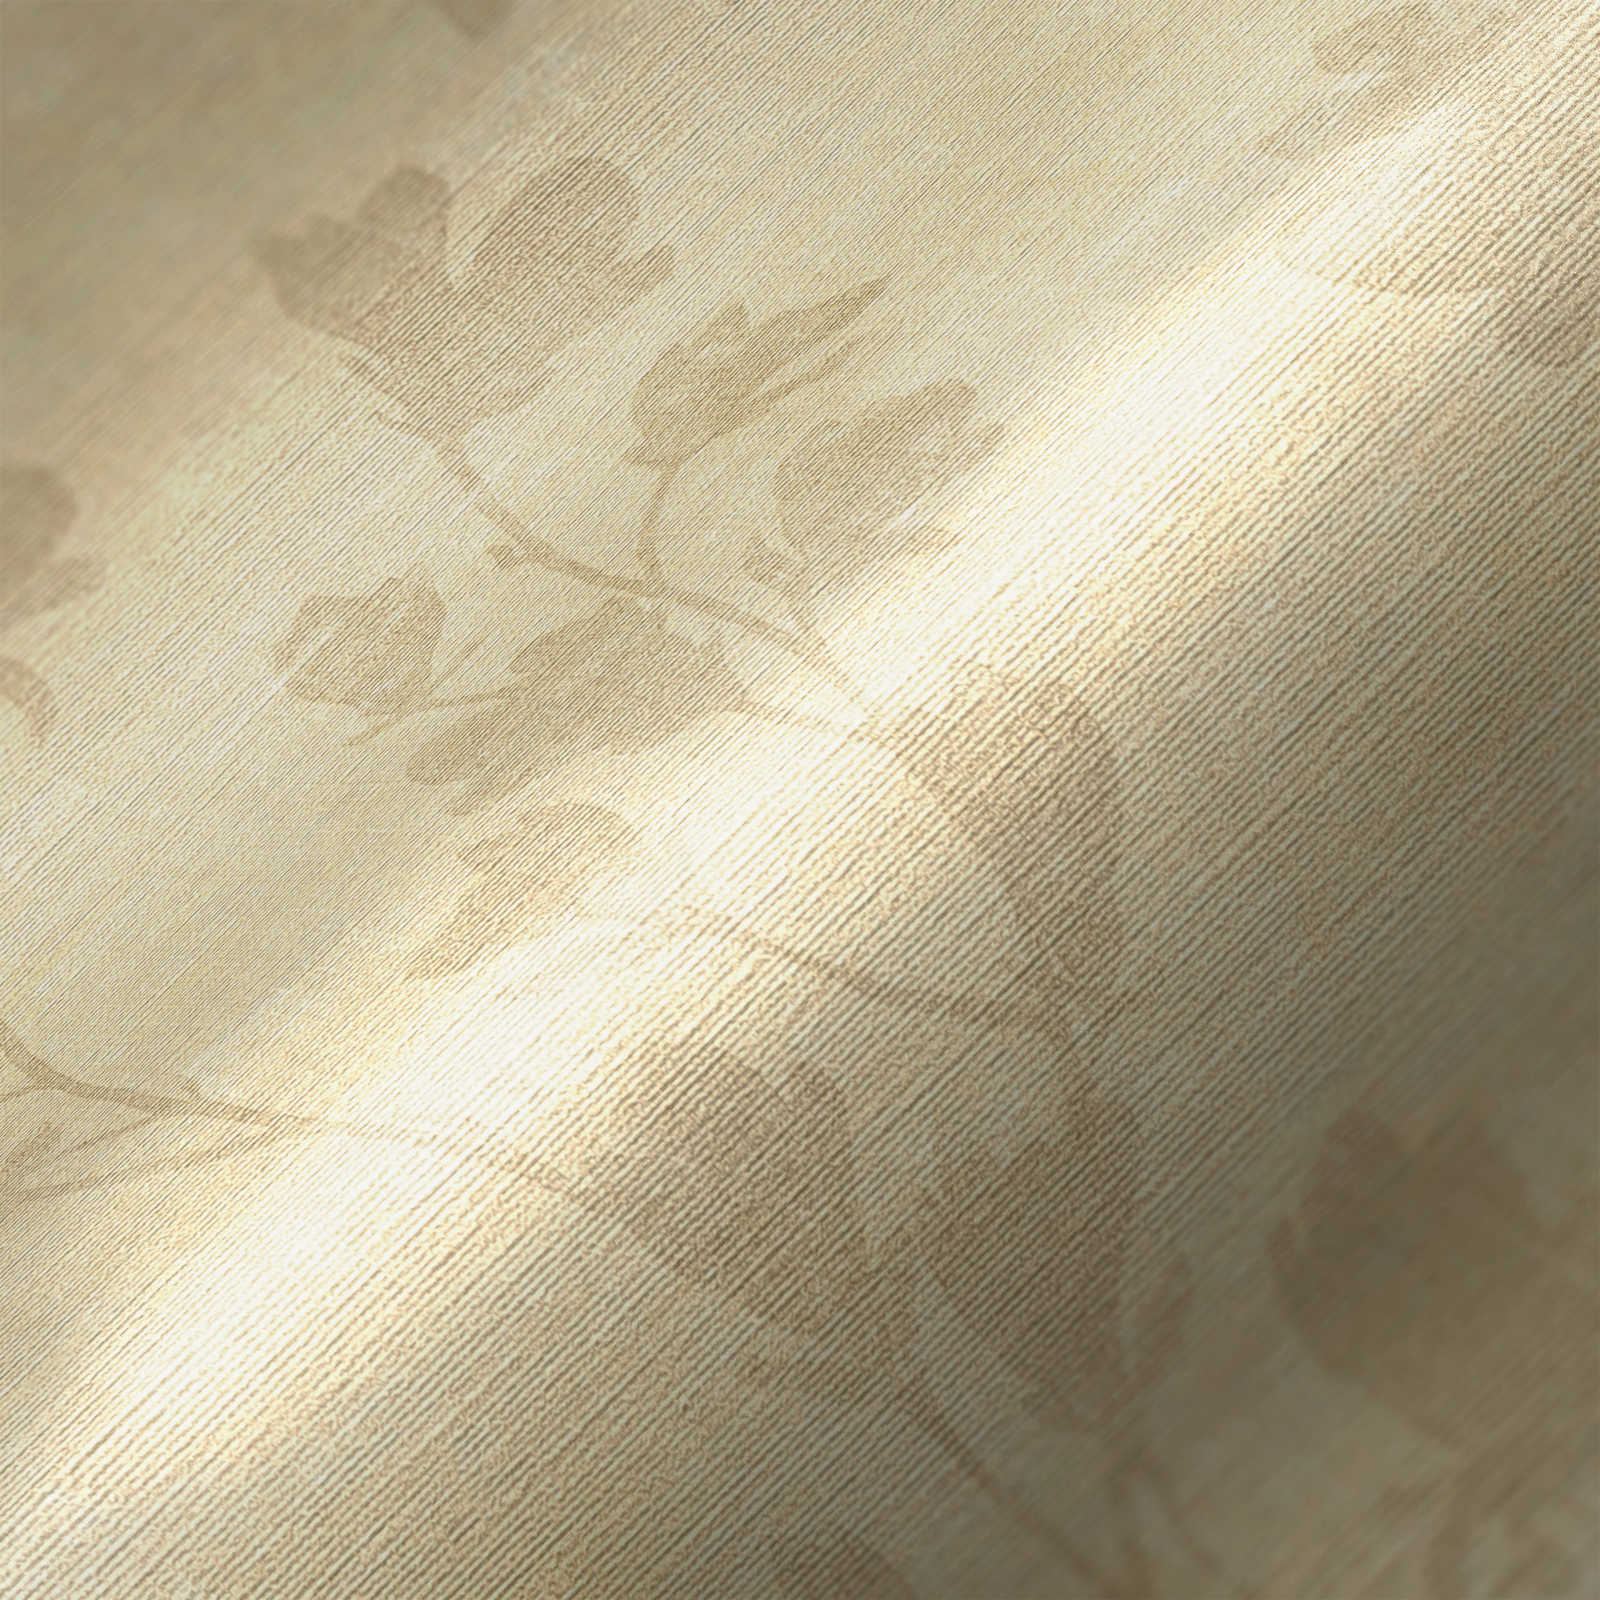             Papel pintado con estampado de hojas en estilo rústico - crema, beige
        